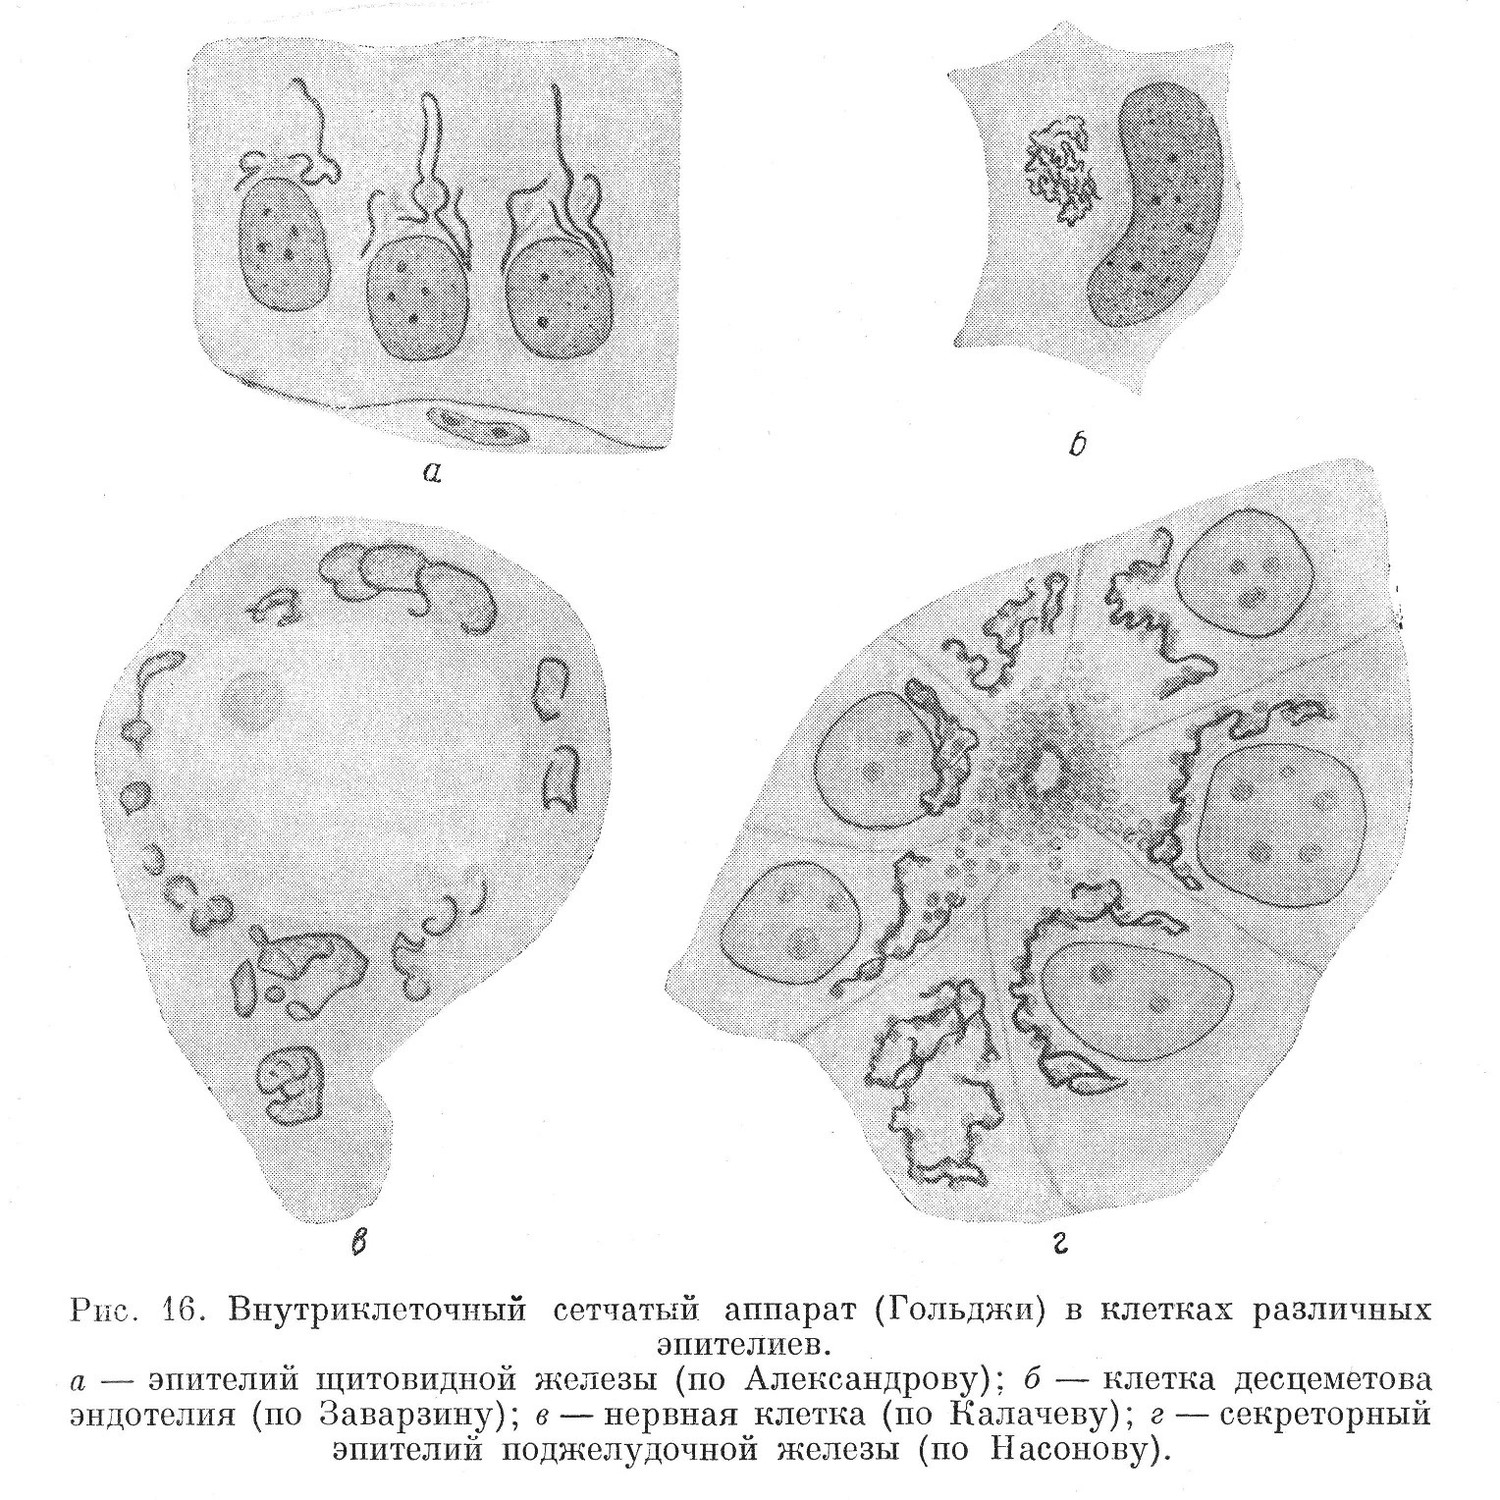 Внутриклеточный сетчатый аппарат (Гольджи) в клетках различных эпителиев.